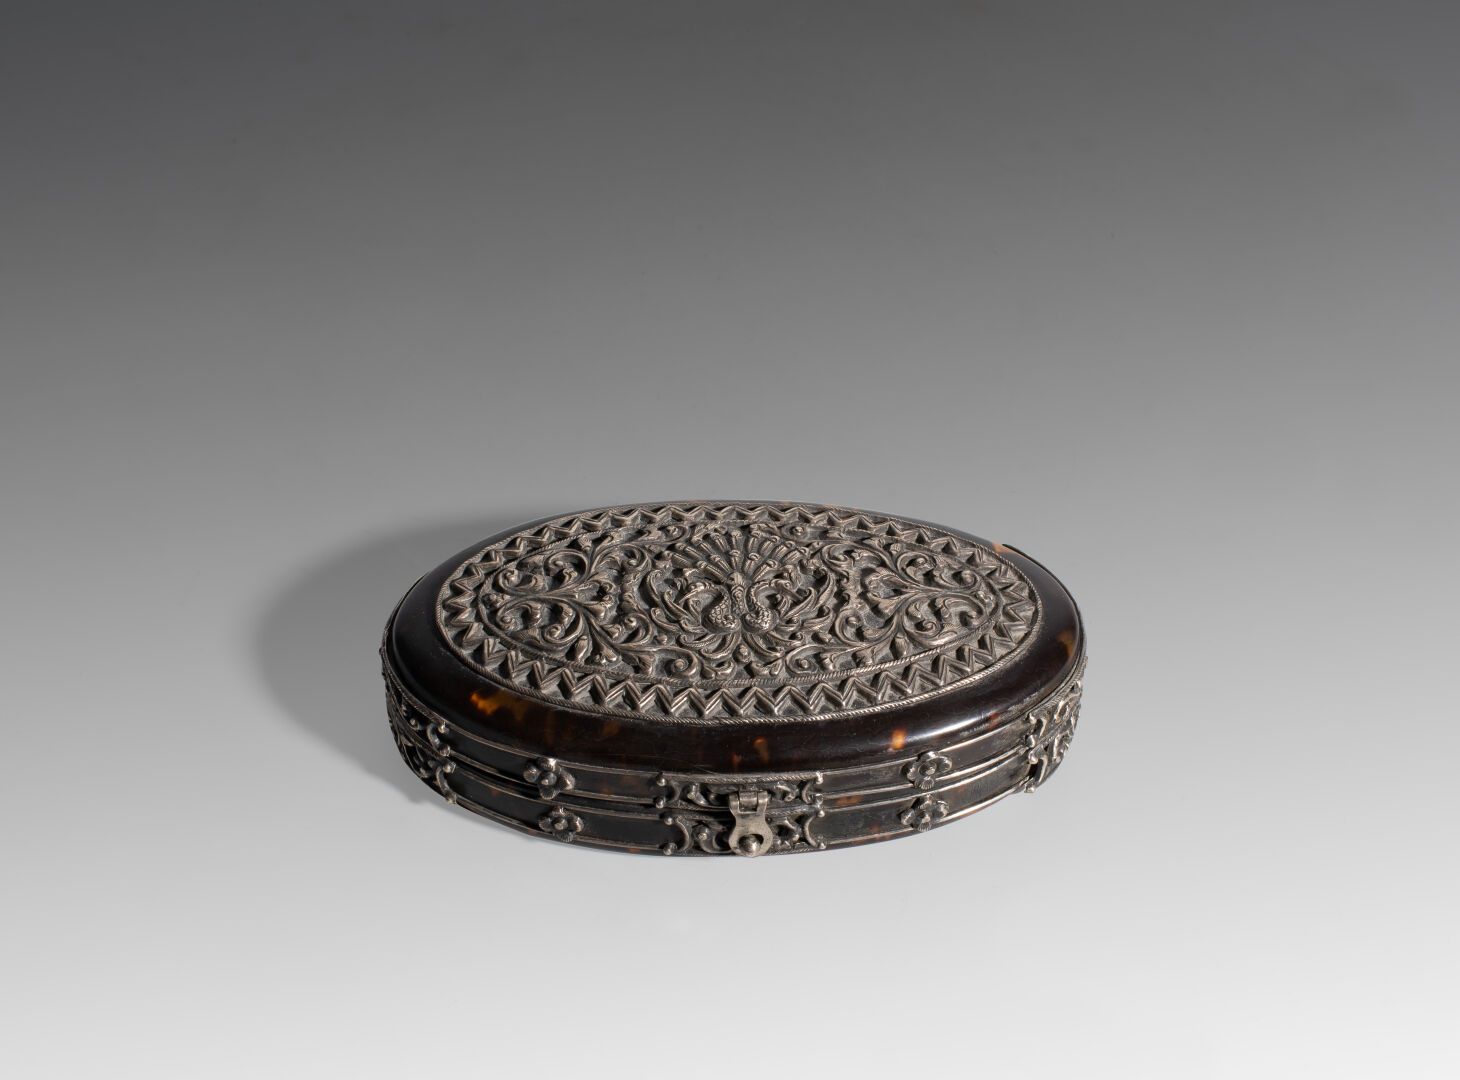 Null Scatola ovale in argento e tartaruga

XIX secolo 

L : 12 cm

(2530)